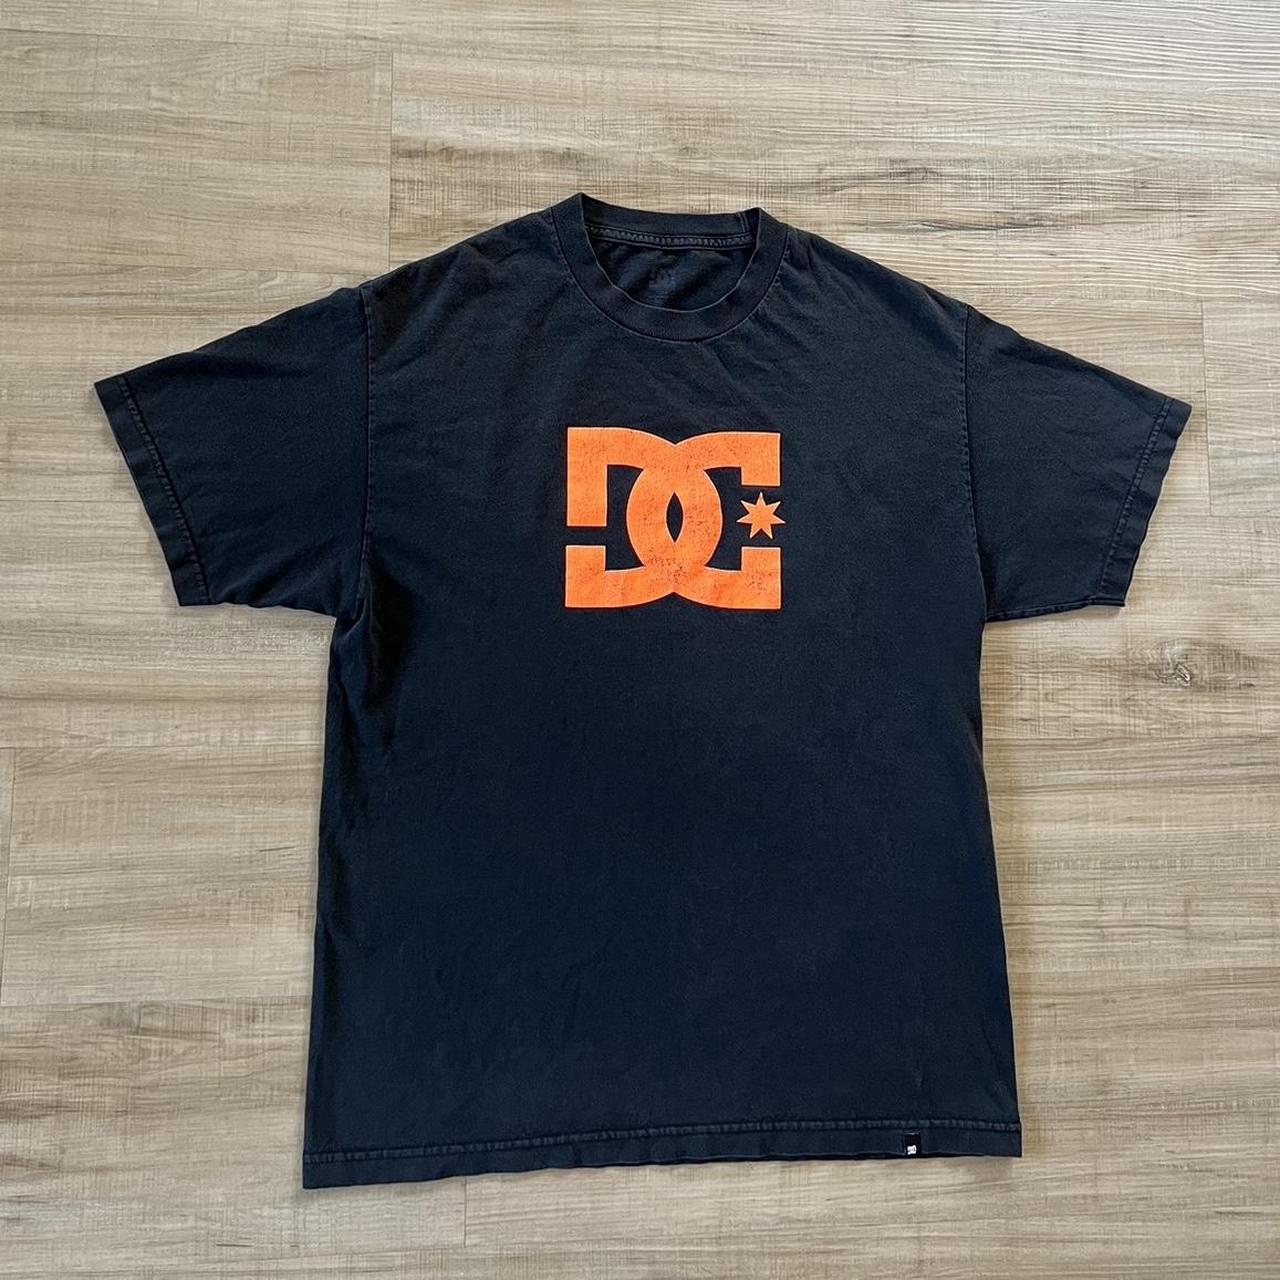 DC Shoes Men's Black and Orange T-shirt